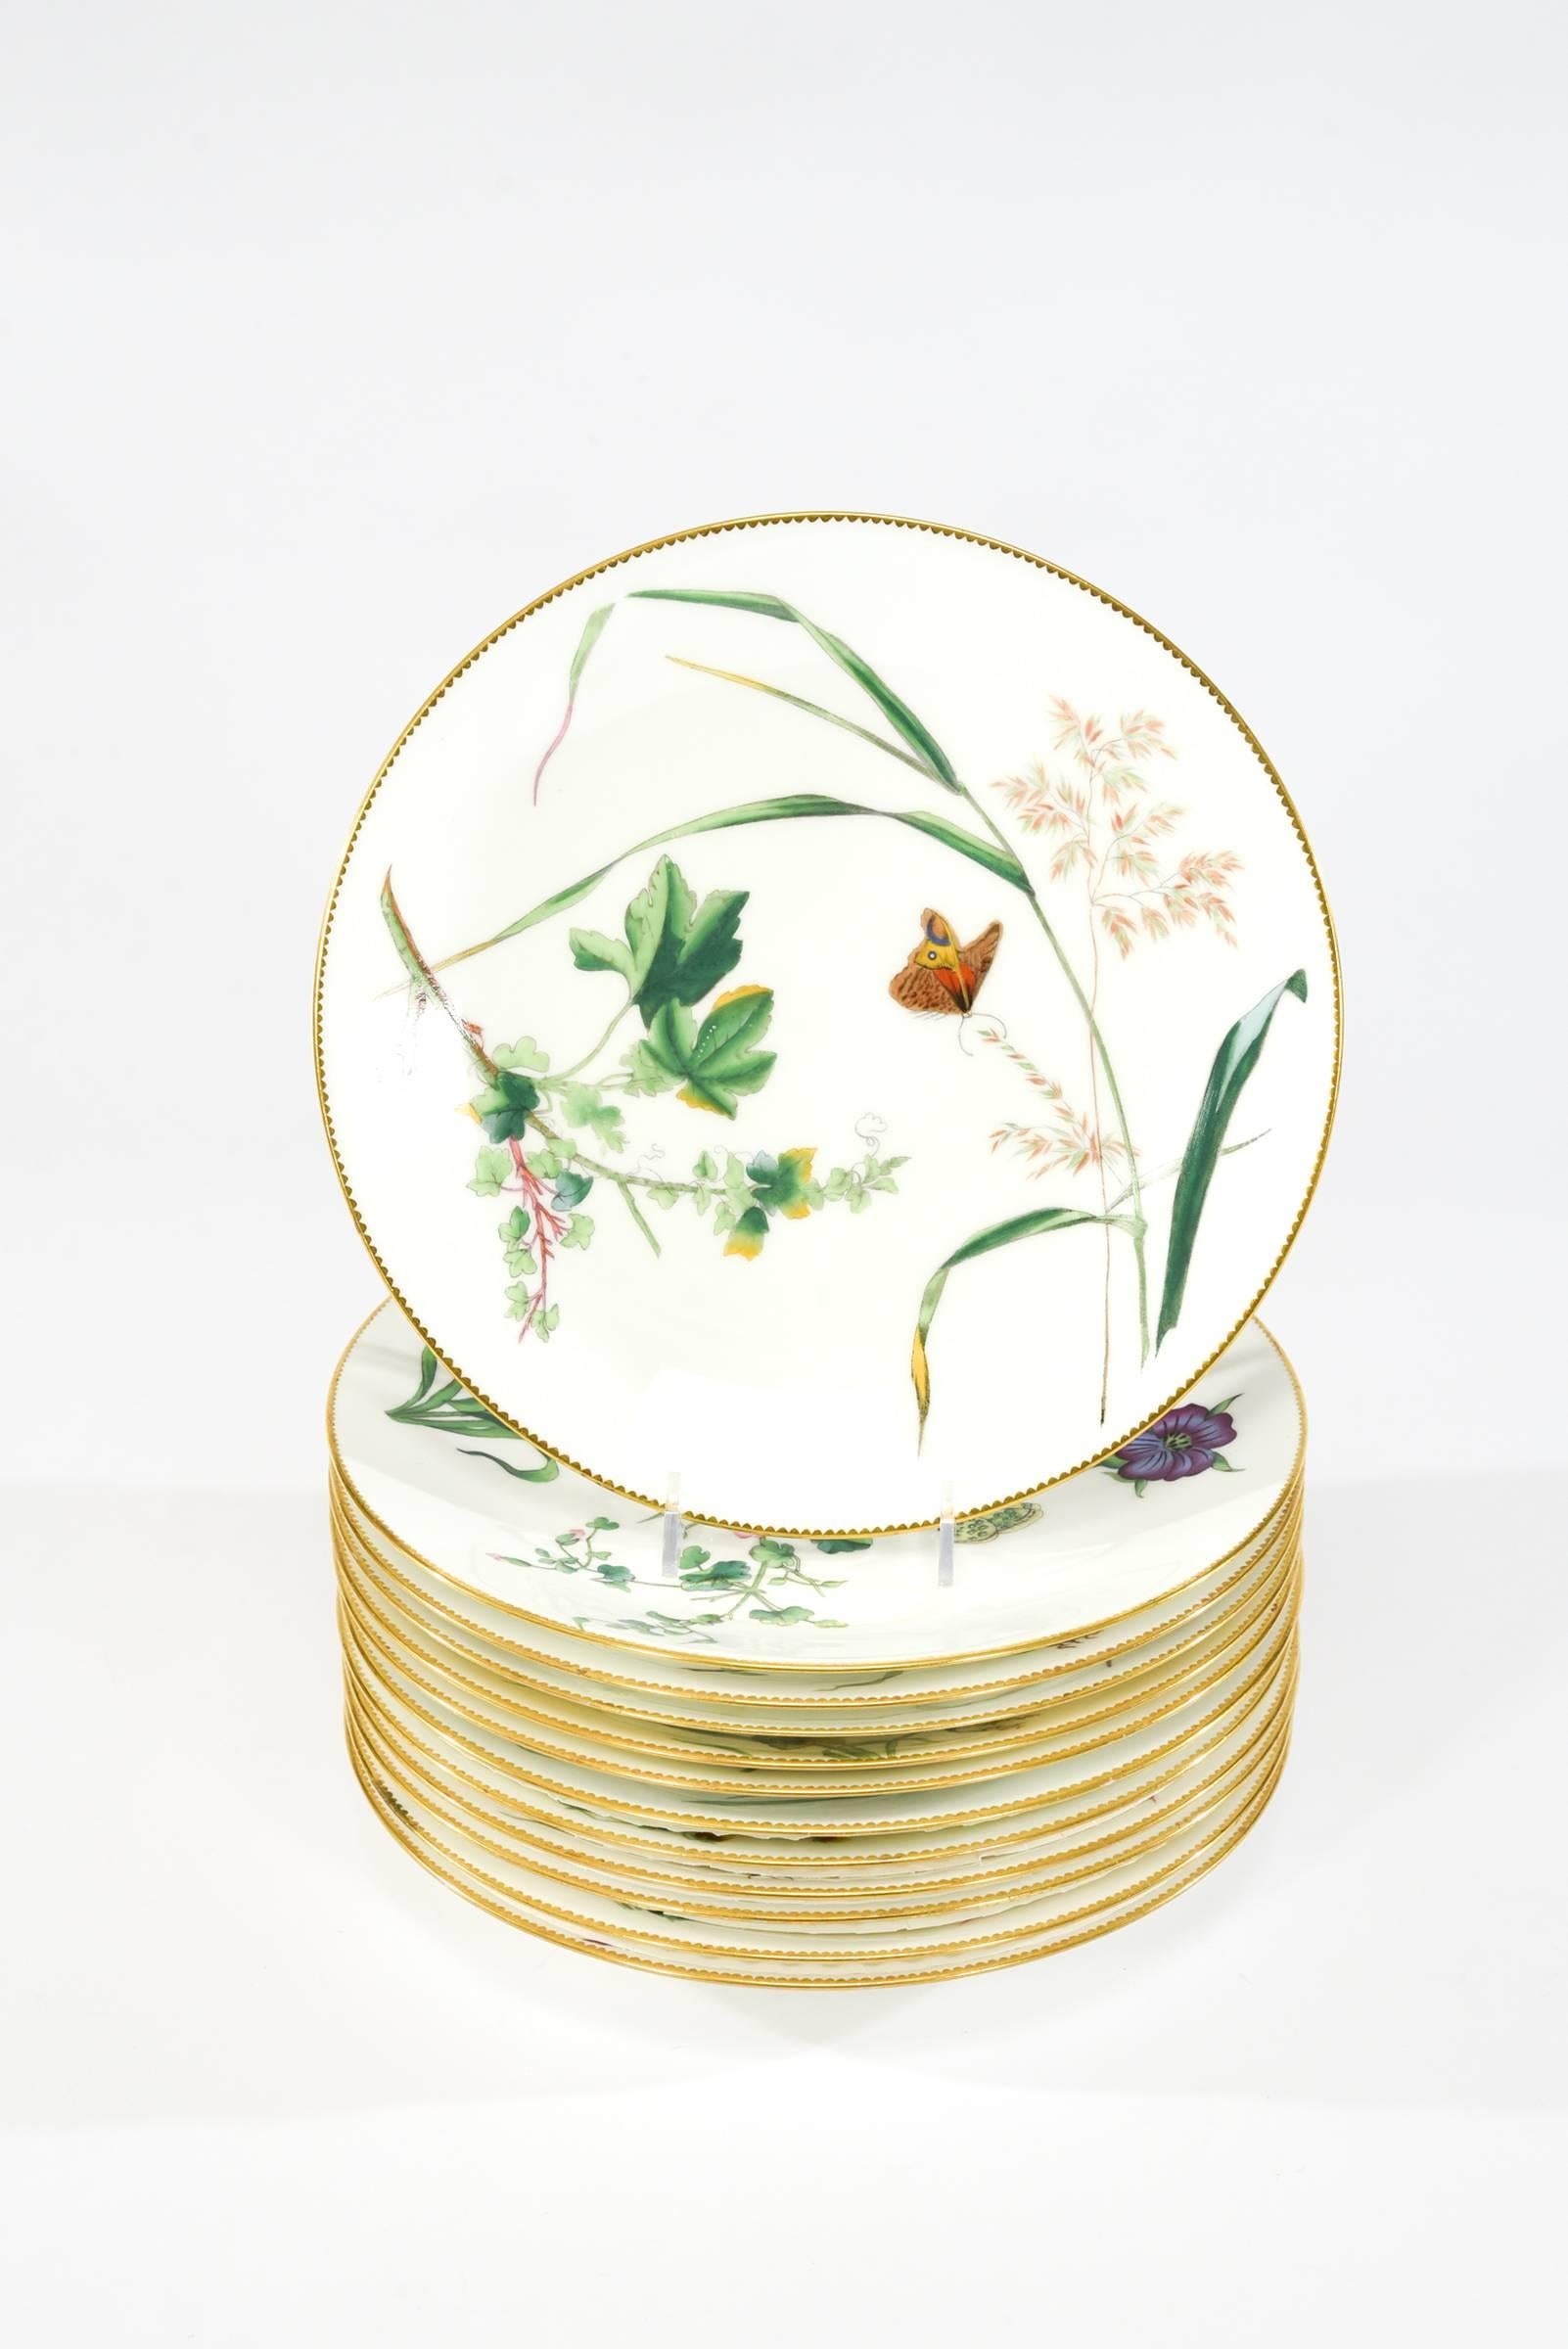 Dieser Satz von 11 handbemalten Minton-Desserttellern ist ein wunderbares Beispiel für die Kunstfertigkeit der Ästhetischen Bewegung. Sie sind auf 1881 datiert und zeigen eine Kombination aus Blumen und Insekten, die sowohl zur Dekoration als auch